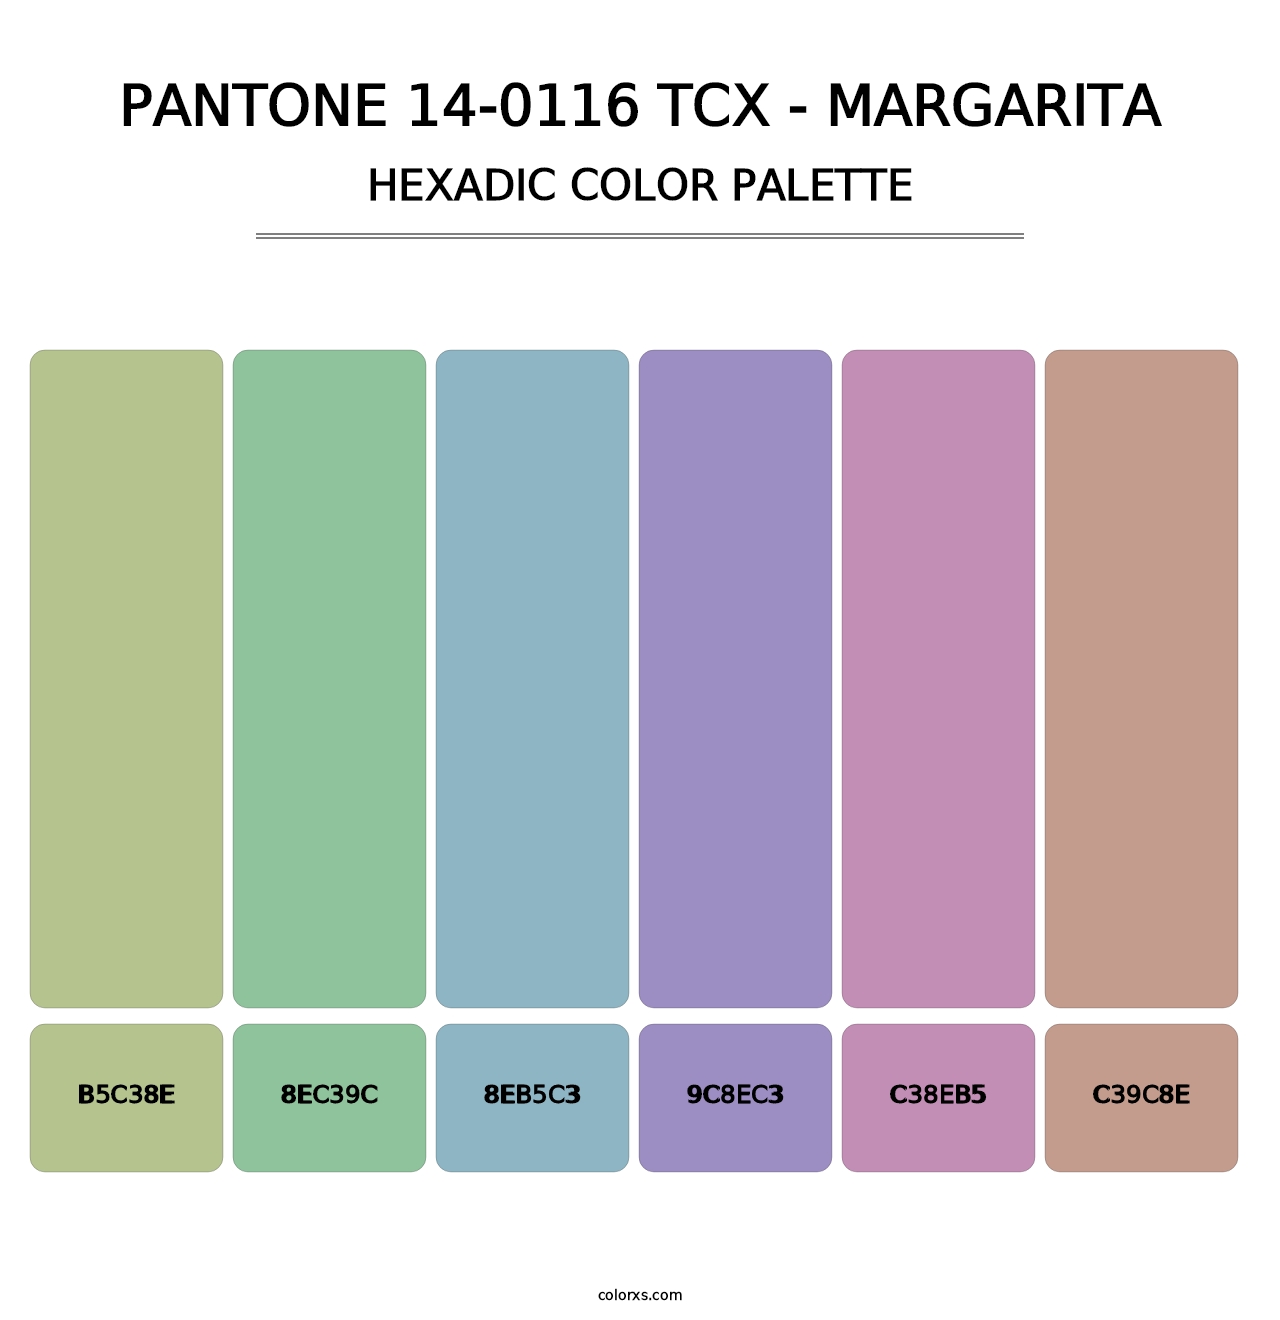 PANTONE 14-0116 TCX - Margarita - Hexadic Color Palette